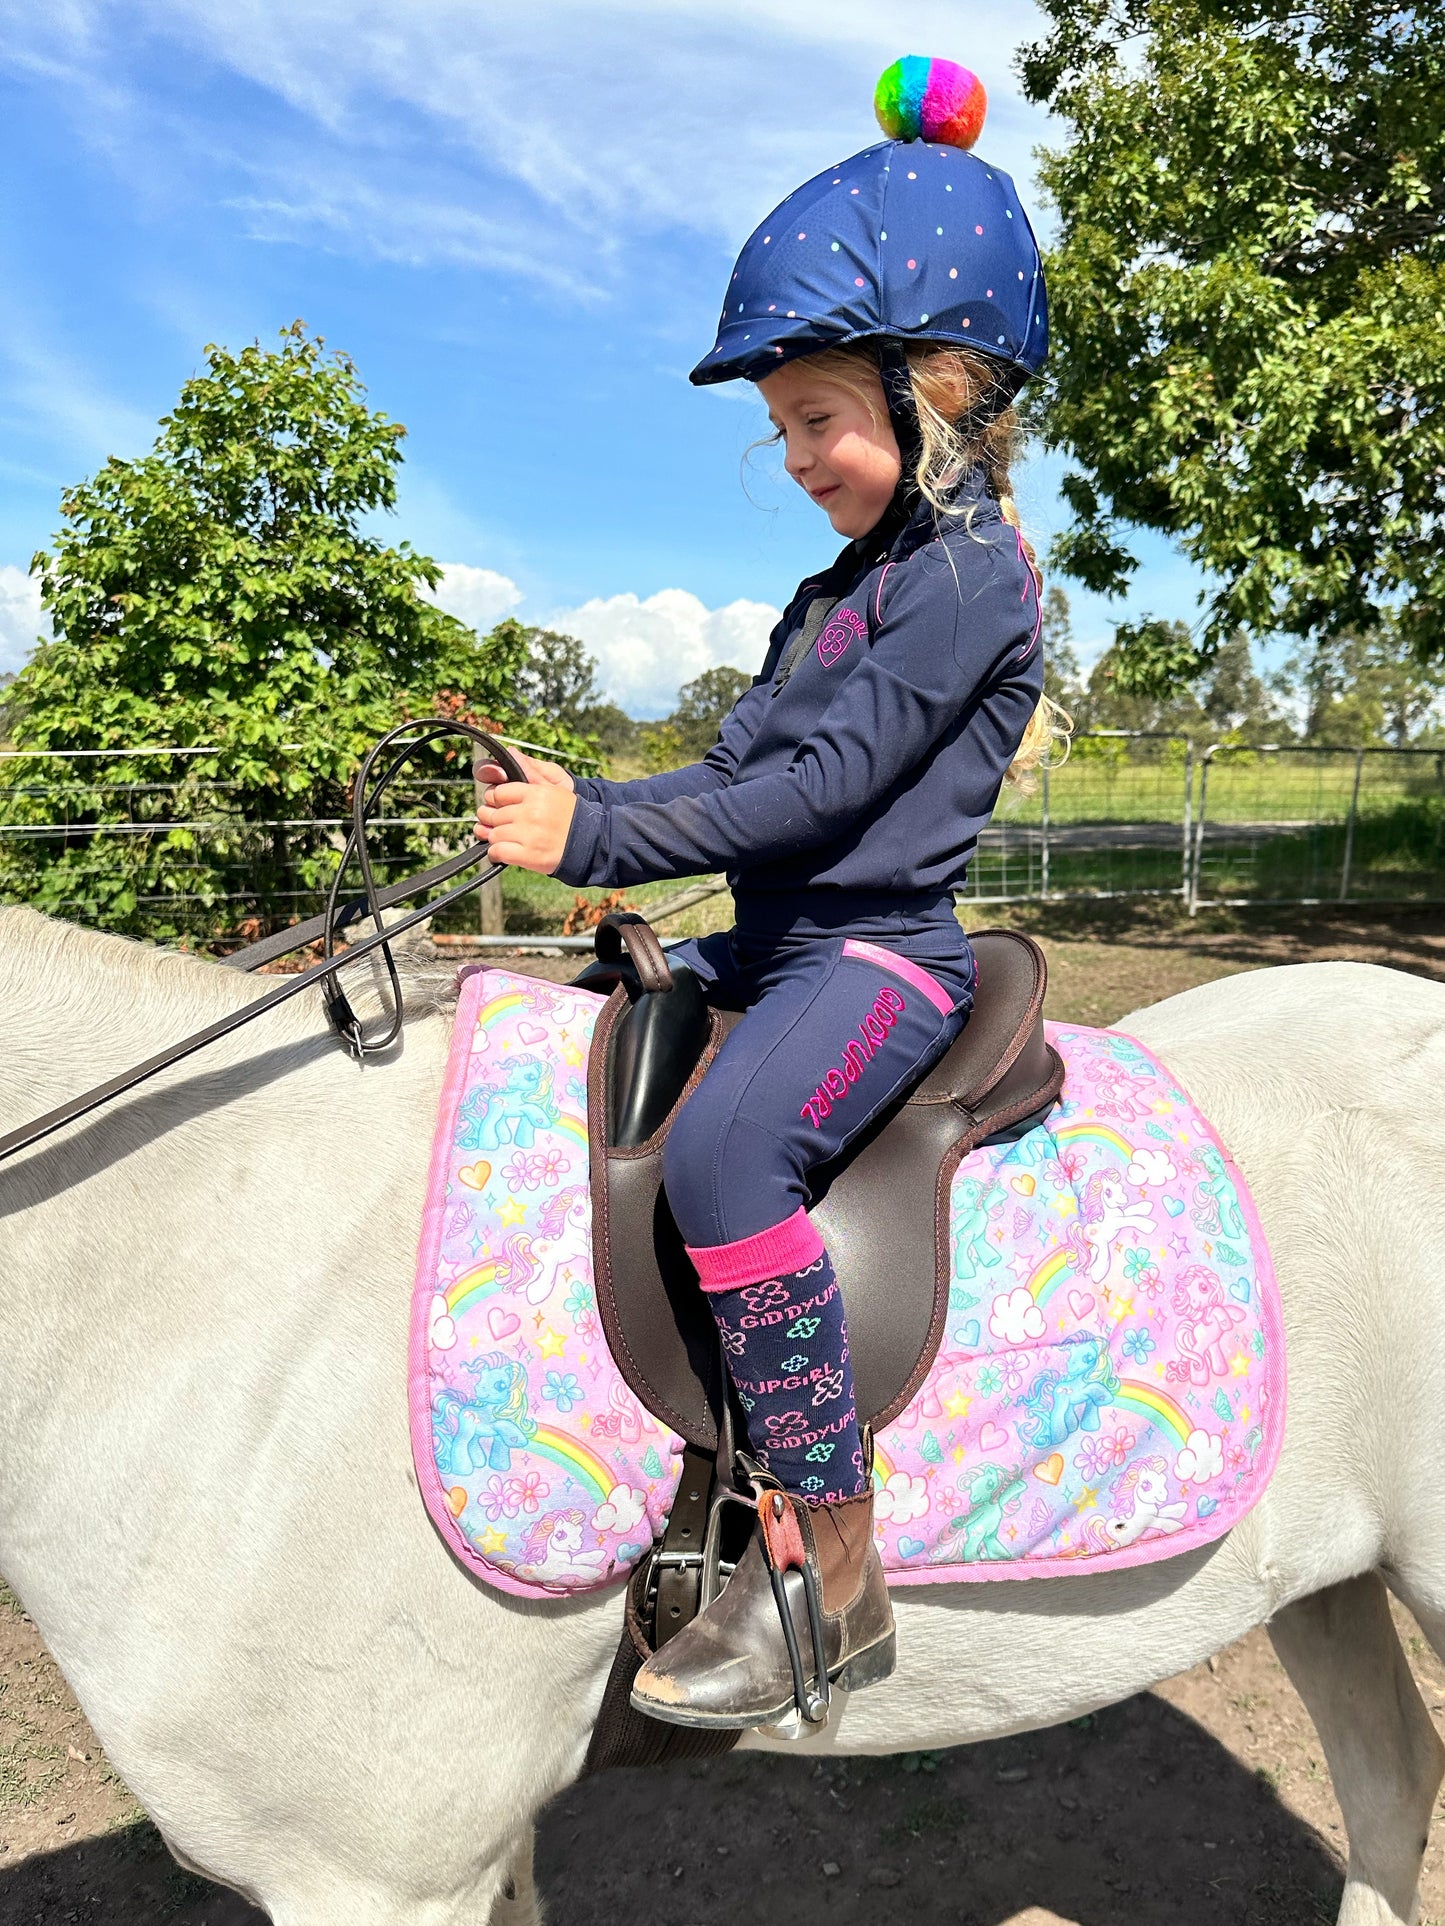 Giddyupgirl Kelsie Kids Horse Riding Socks